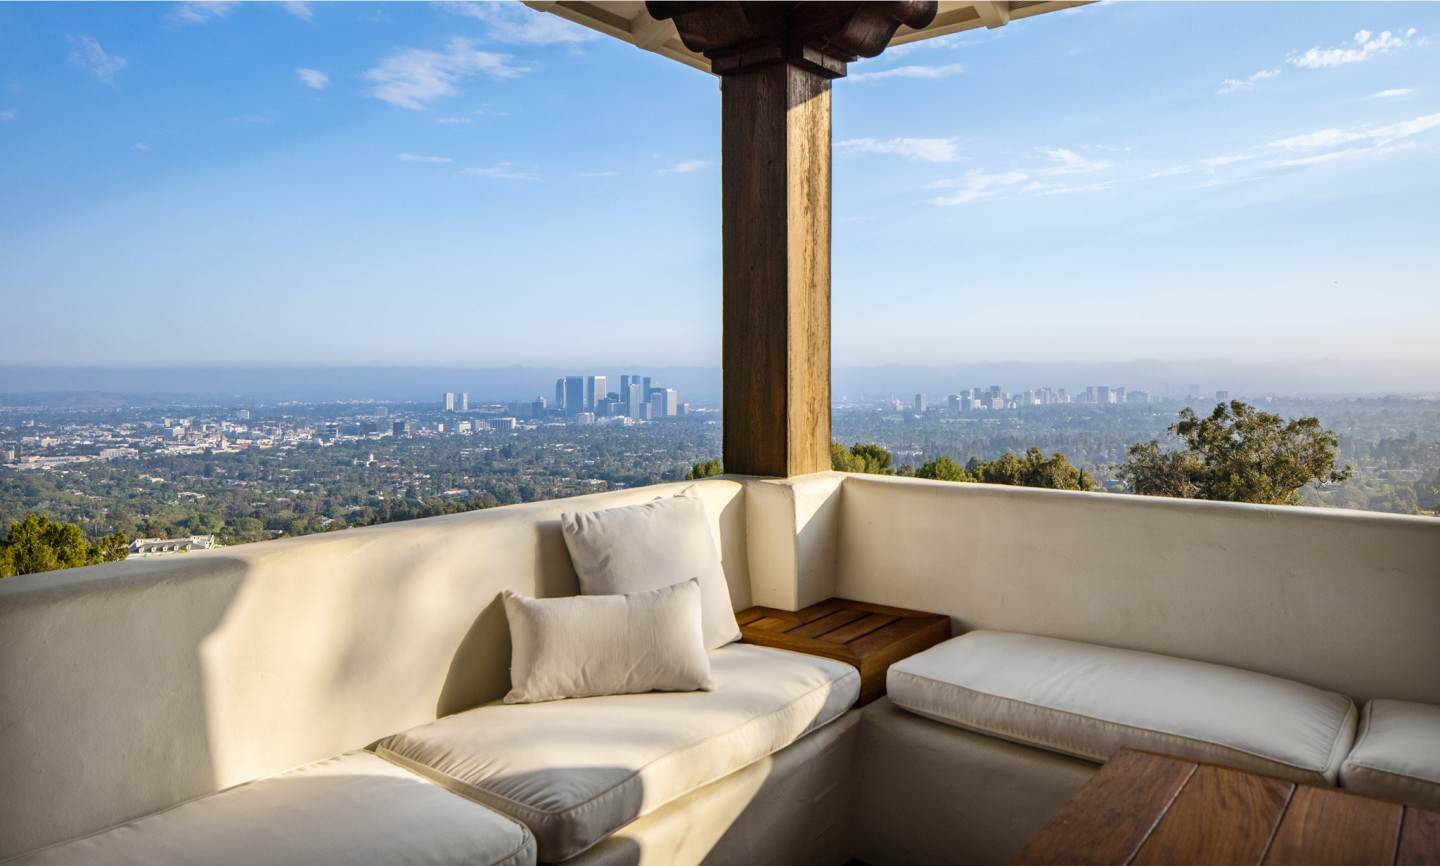 Mediterranean Estate in Beverly Hills